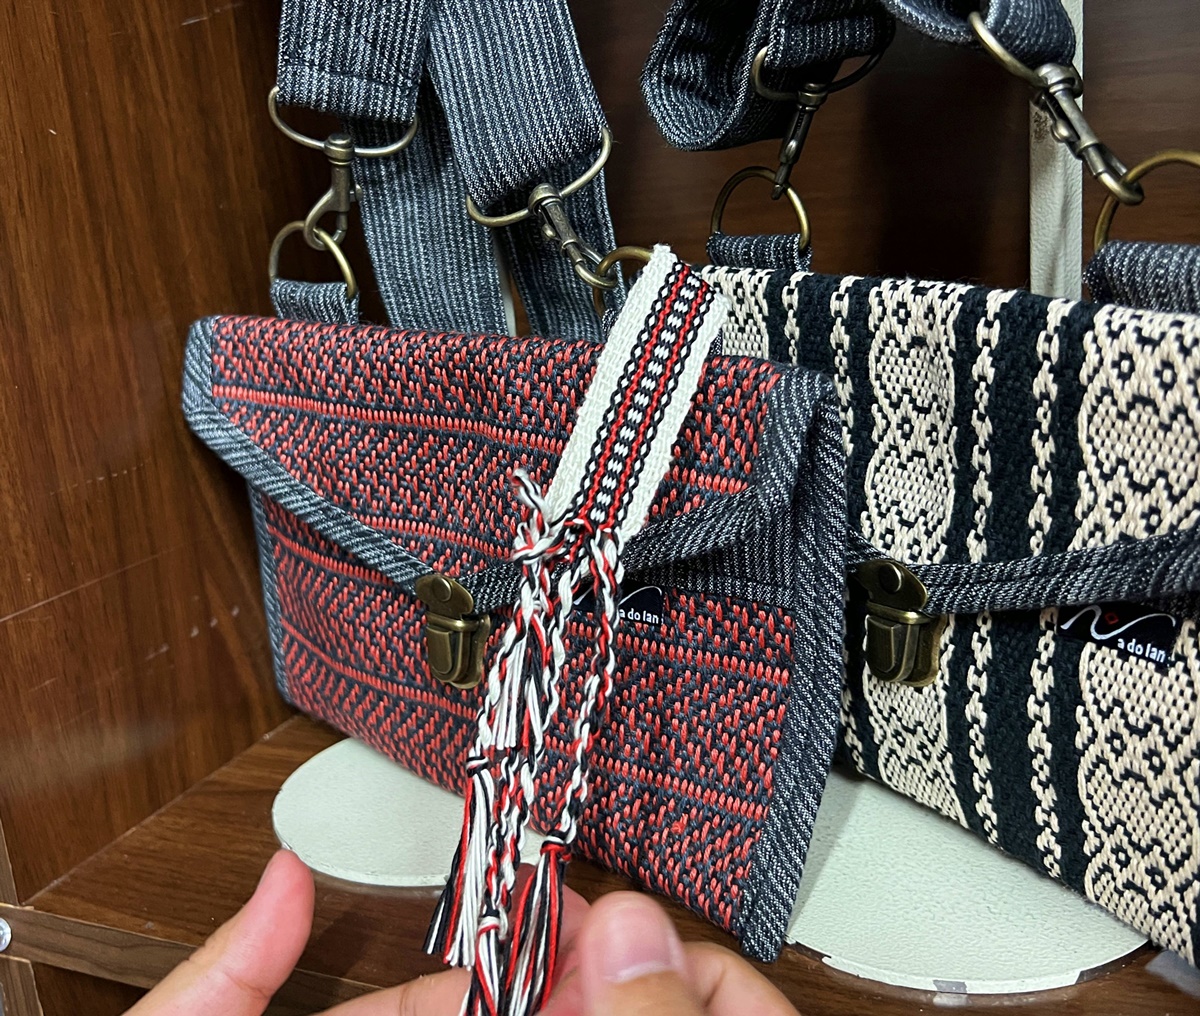 織布男的理想生活，傳承太魯閣族織布技藝的文化符號與見證一個新作品的誕生！那都蘭工作室 X 織布男將博．里漢老師 @。CJ夫人。